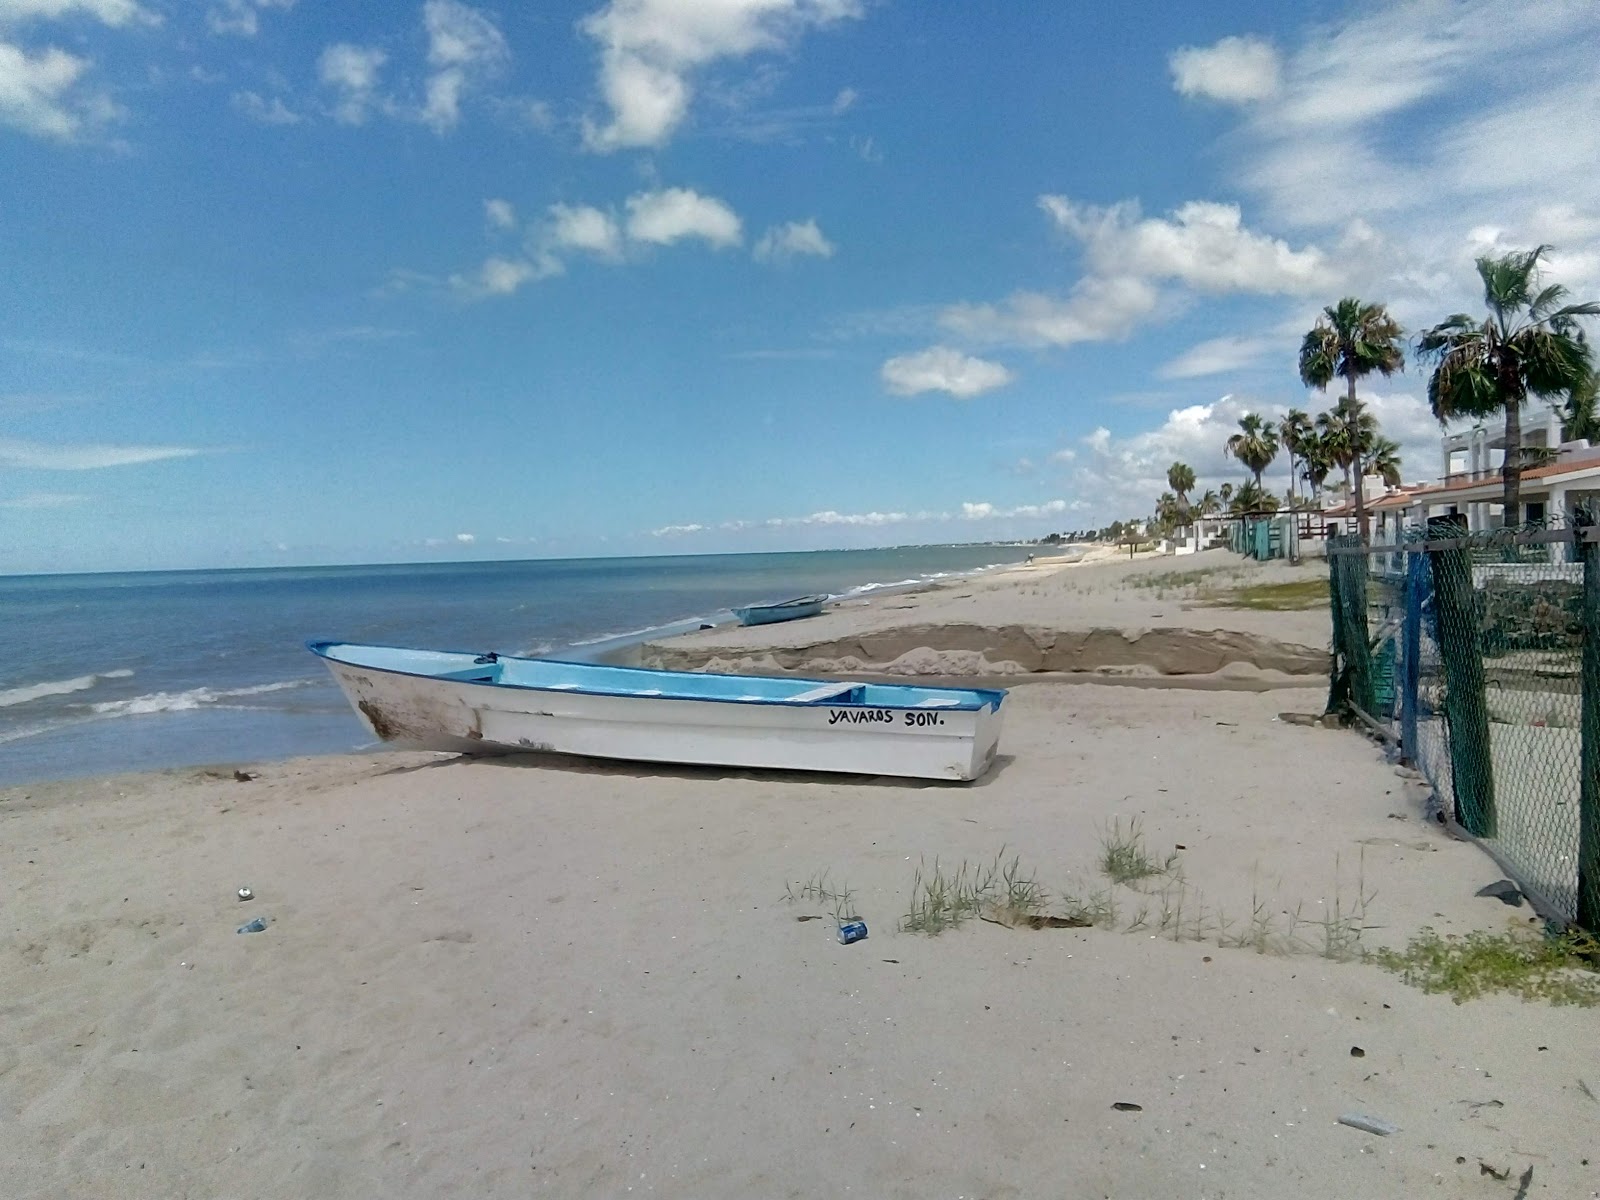 Camahuiroa beach'in fotoğrafı turkuaz su yüzey ile